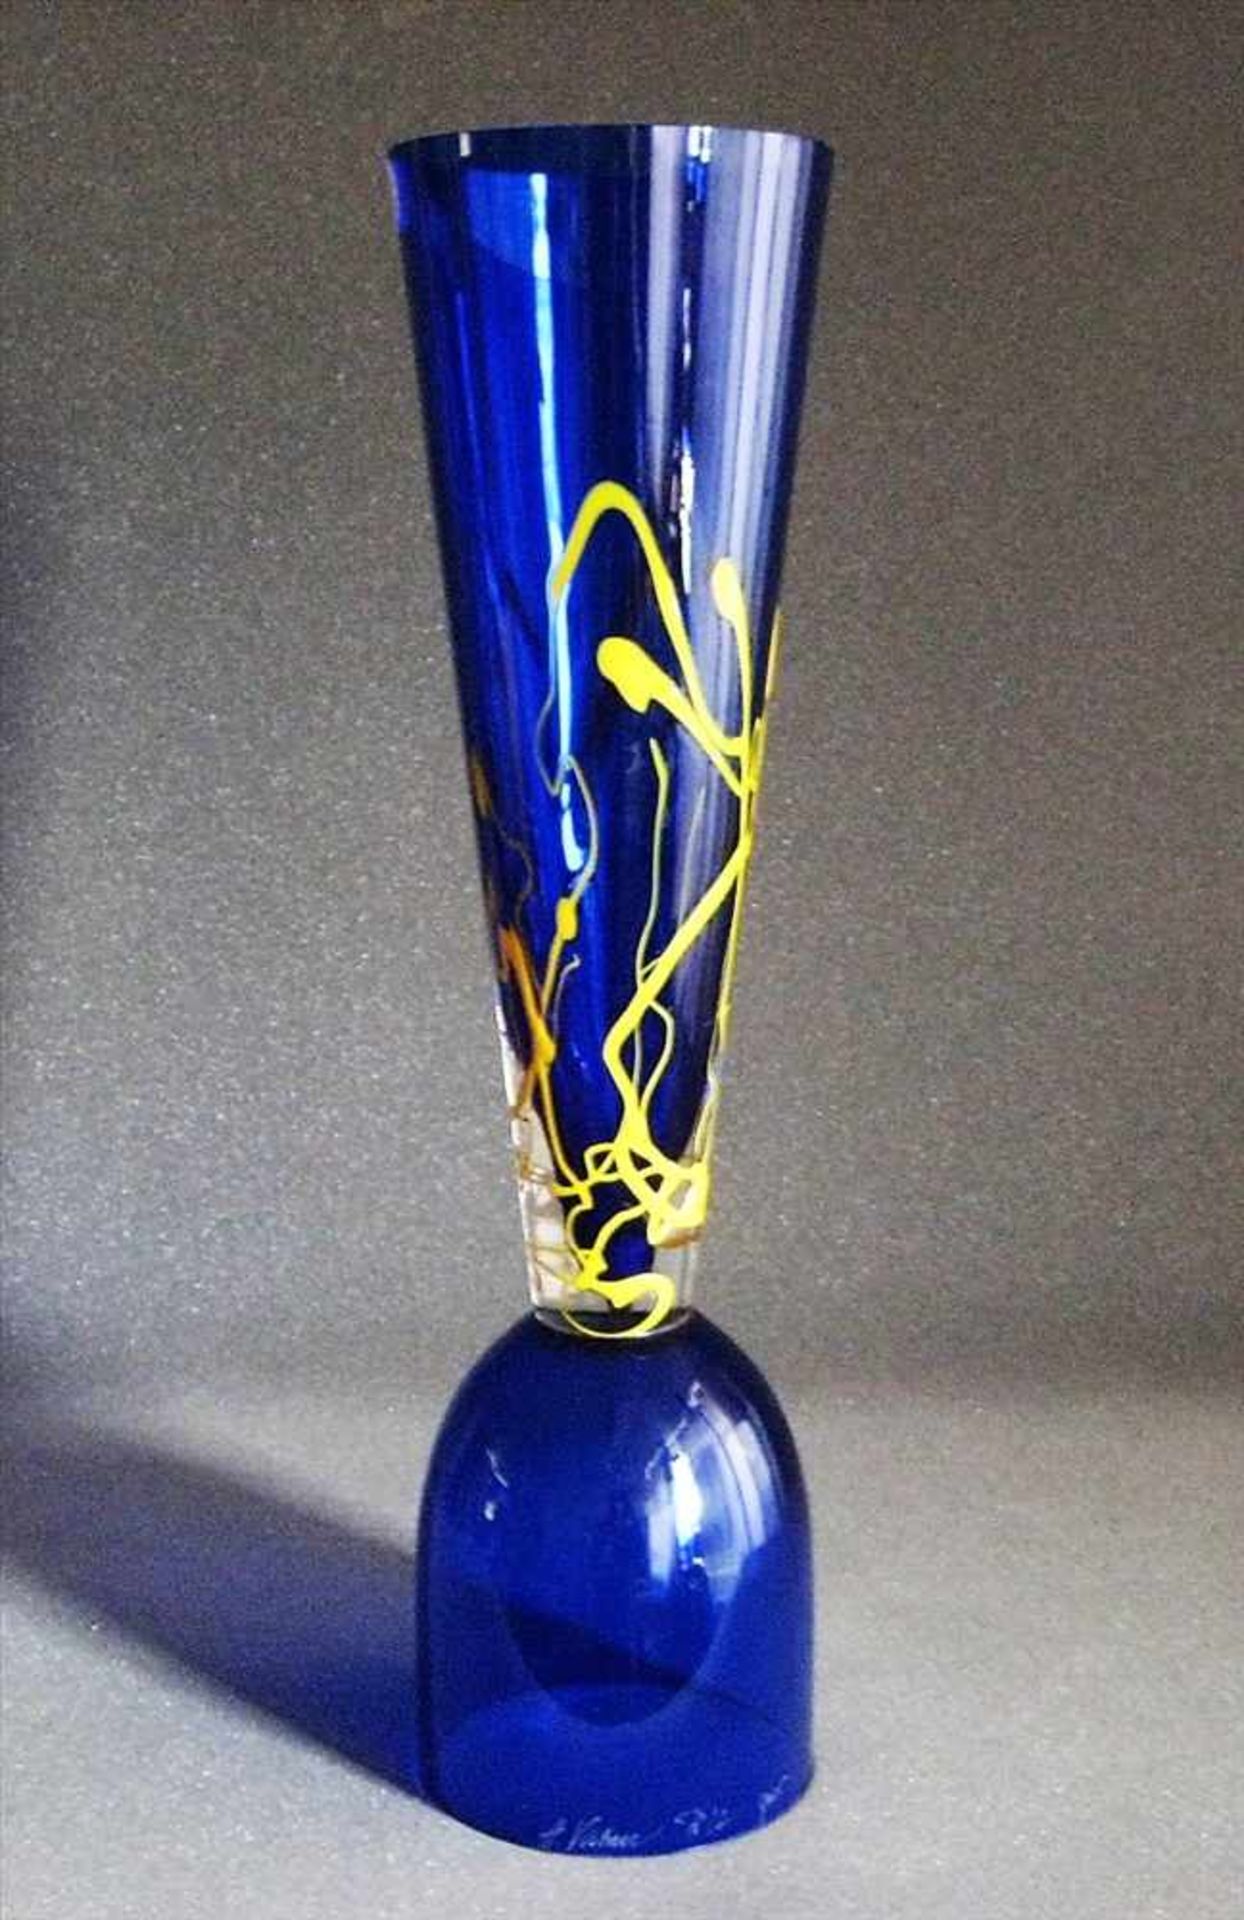 Designer-Vase, sign. A. Vahnu, bläuliches Glas mit gelben Fäden, h 50,5 cm, d 13,5 cm.